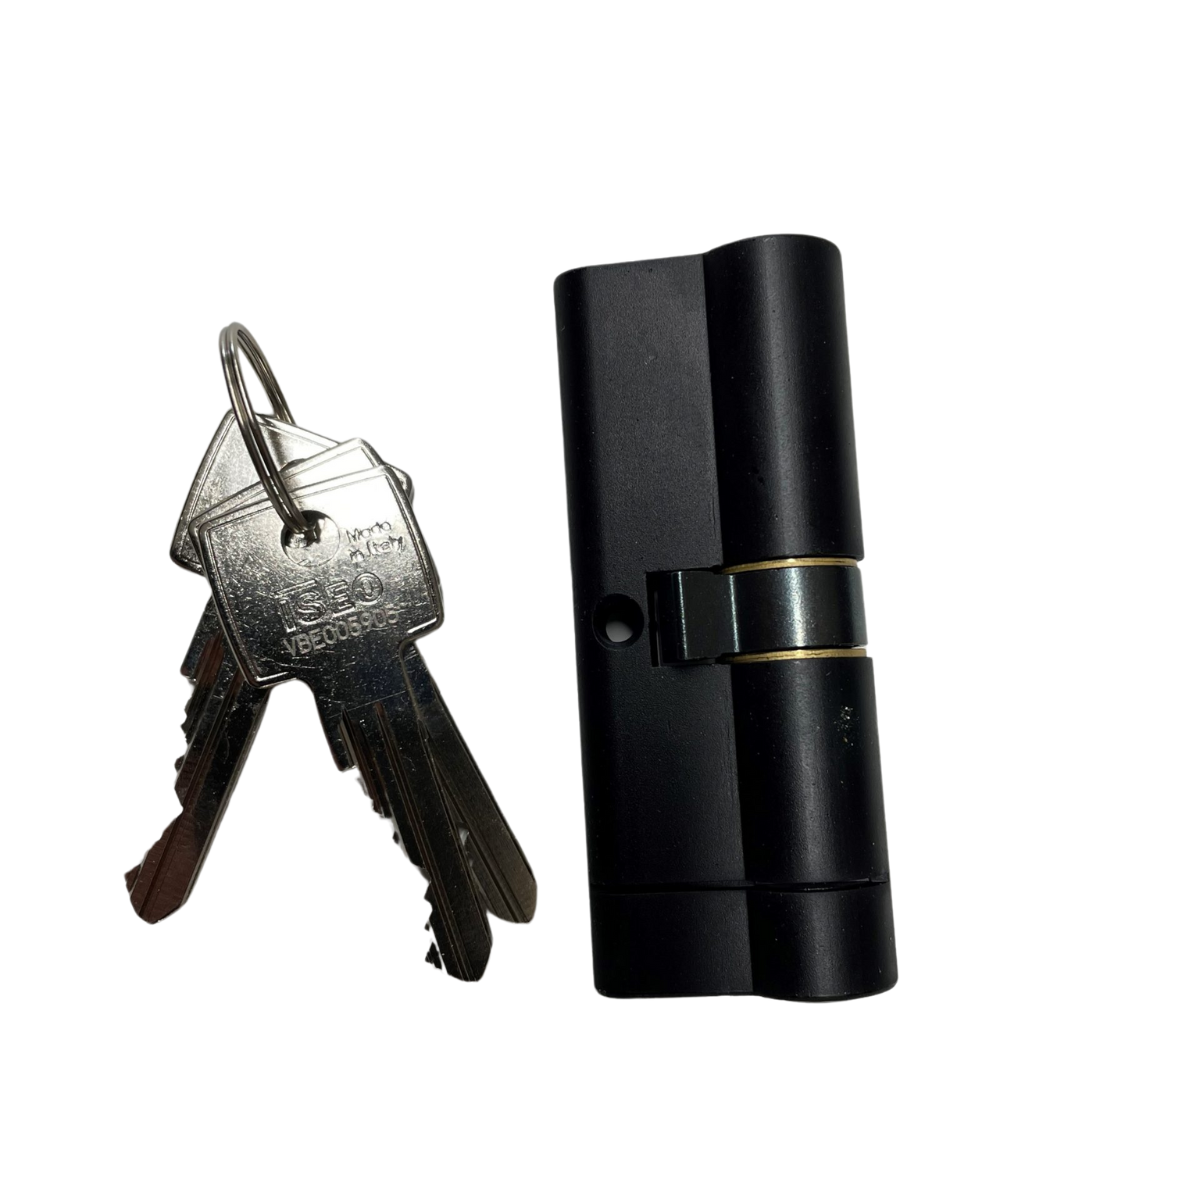 Mattschwarzer Iseo-Zylinder 40-40 SKG*** mit 3 Schlüsseln